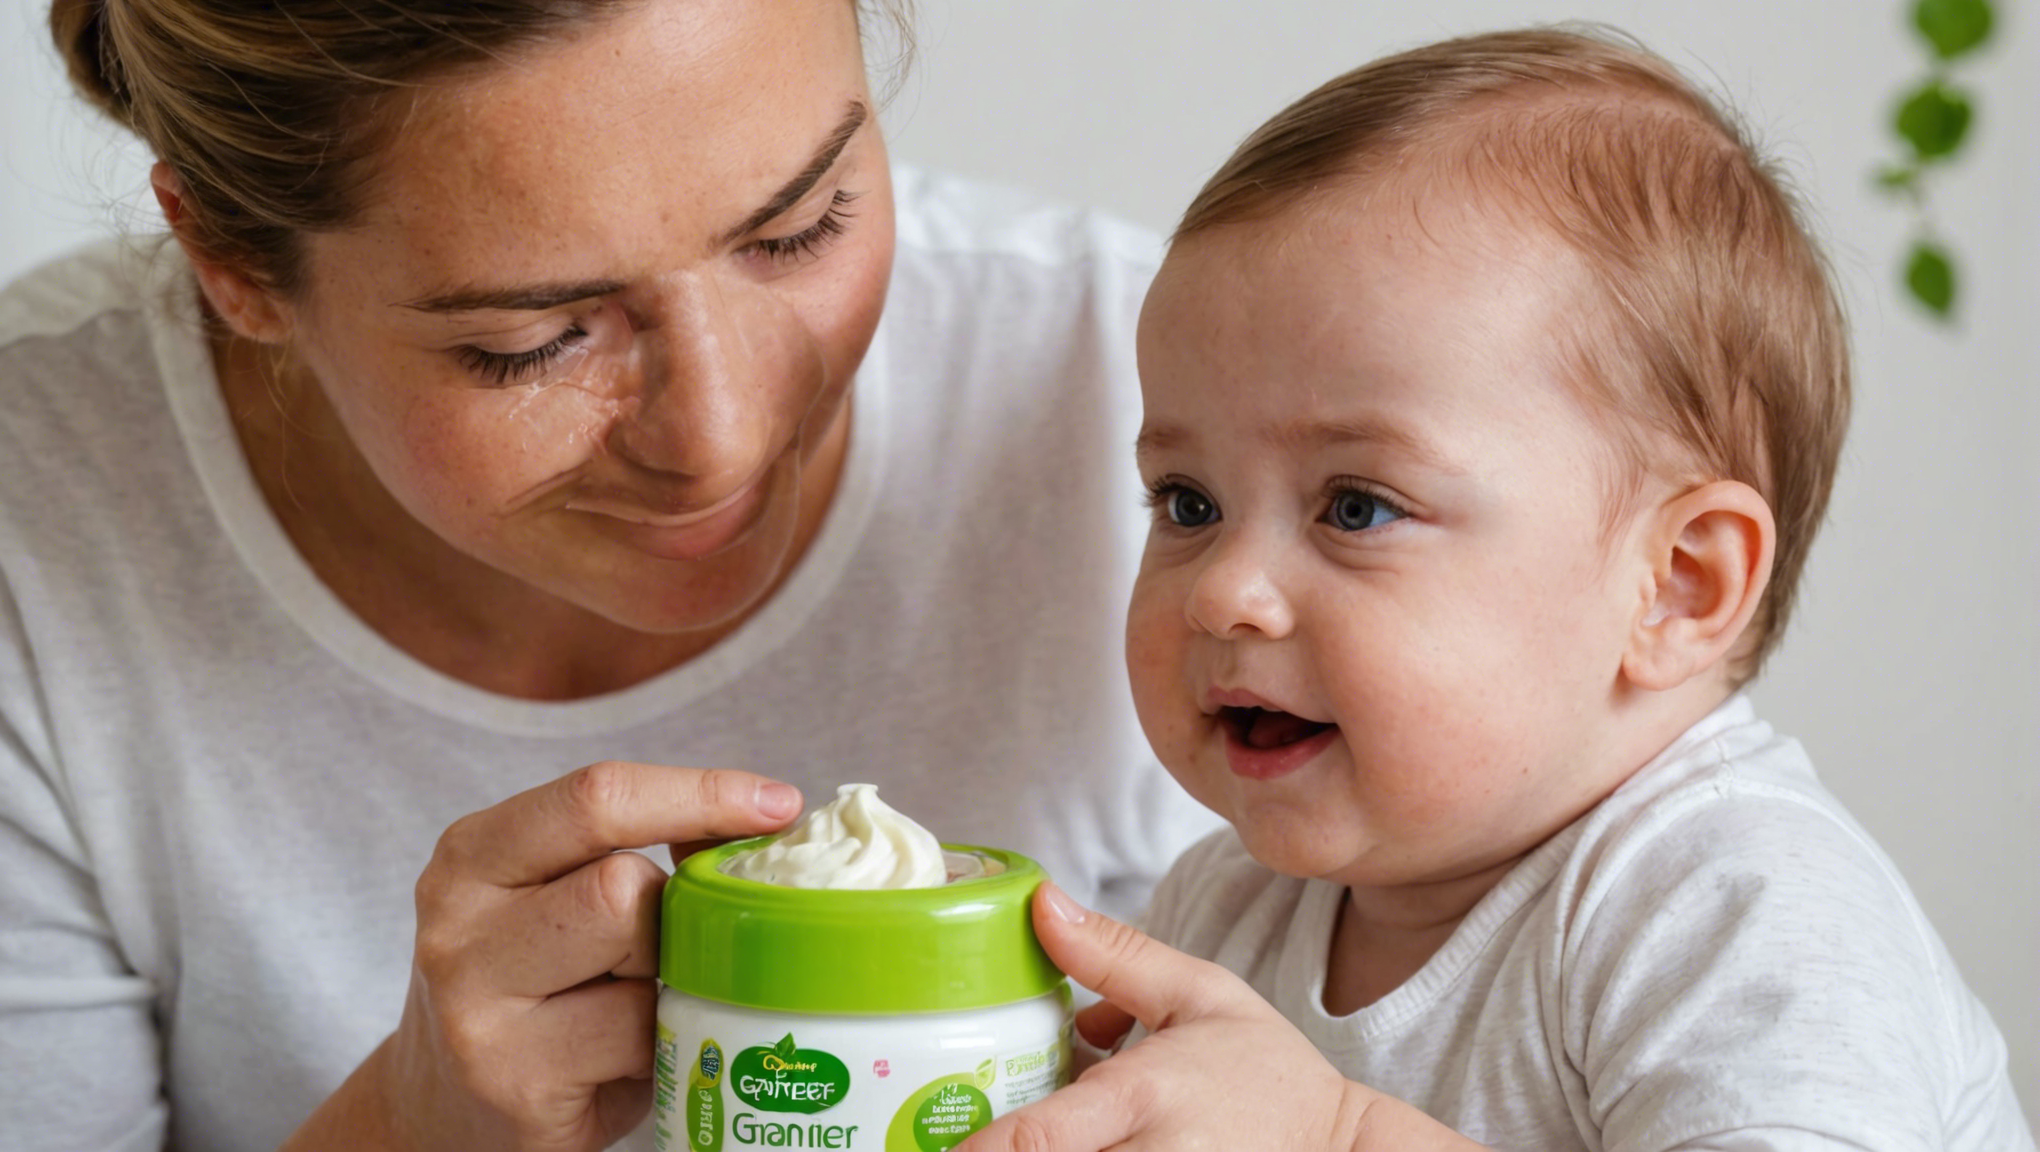 découvrez nos conseils pour bien choisir la crème garnier pour bébé et prendre soin de sa peau délicate. trouvez la crème adaptée à ses besoins et sa sensibilité grâce à nos recommandations.